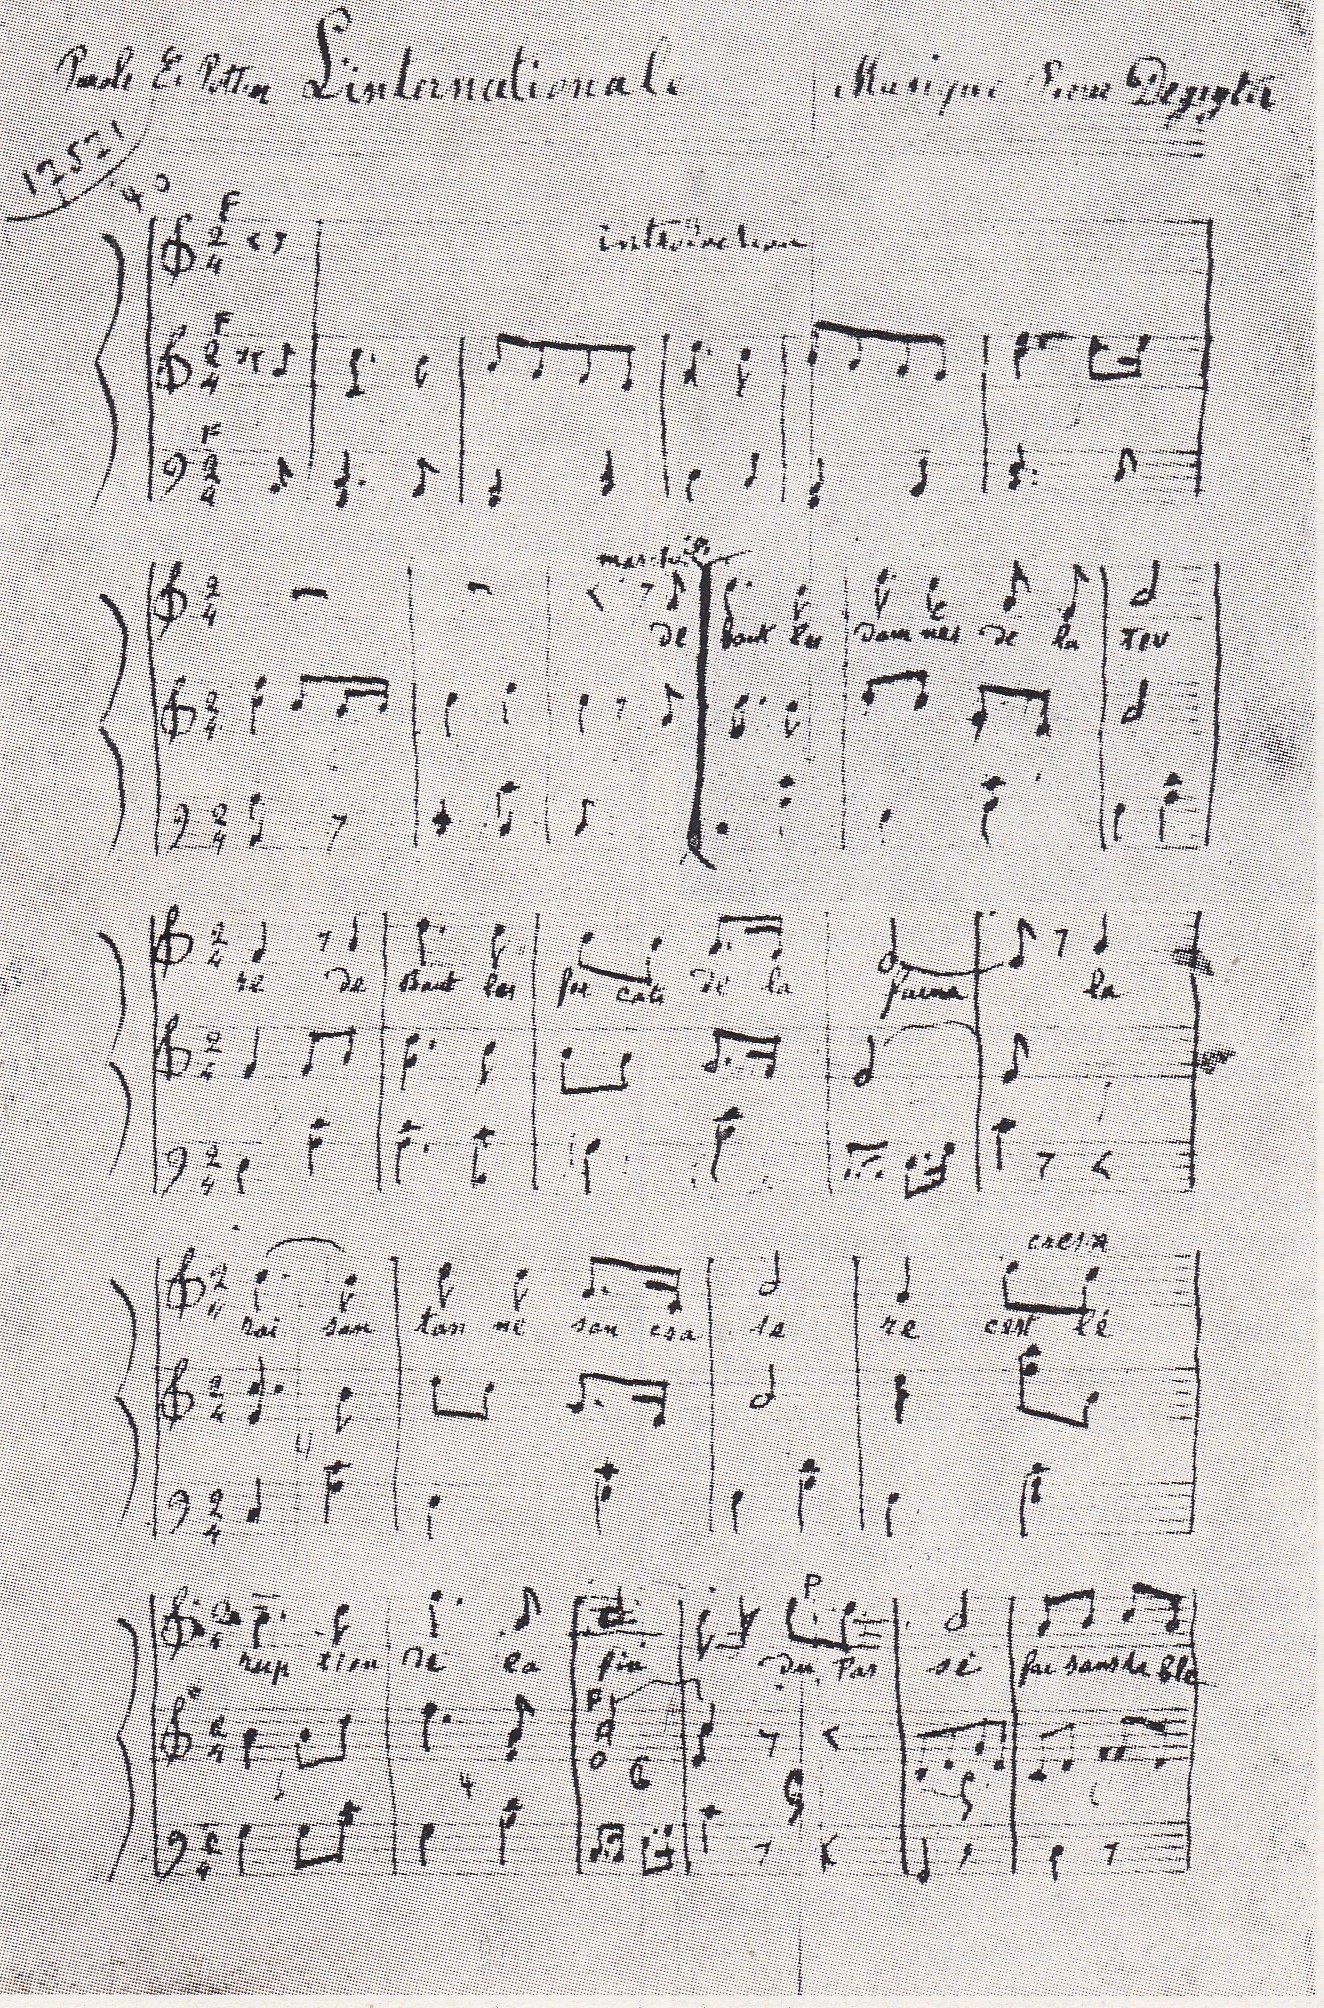 Première page du manuscrit de "l'Internationale" écrite par Pierre Degeyter